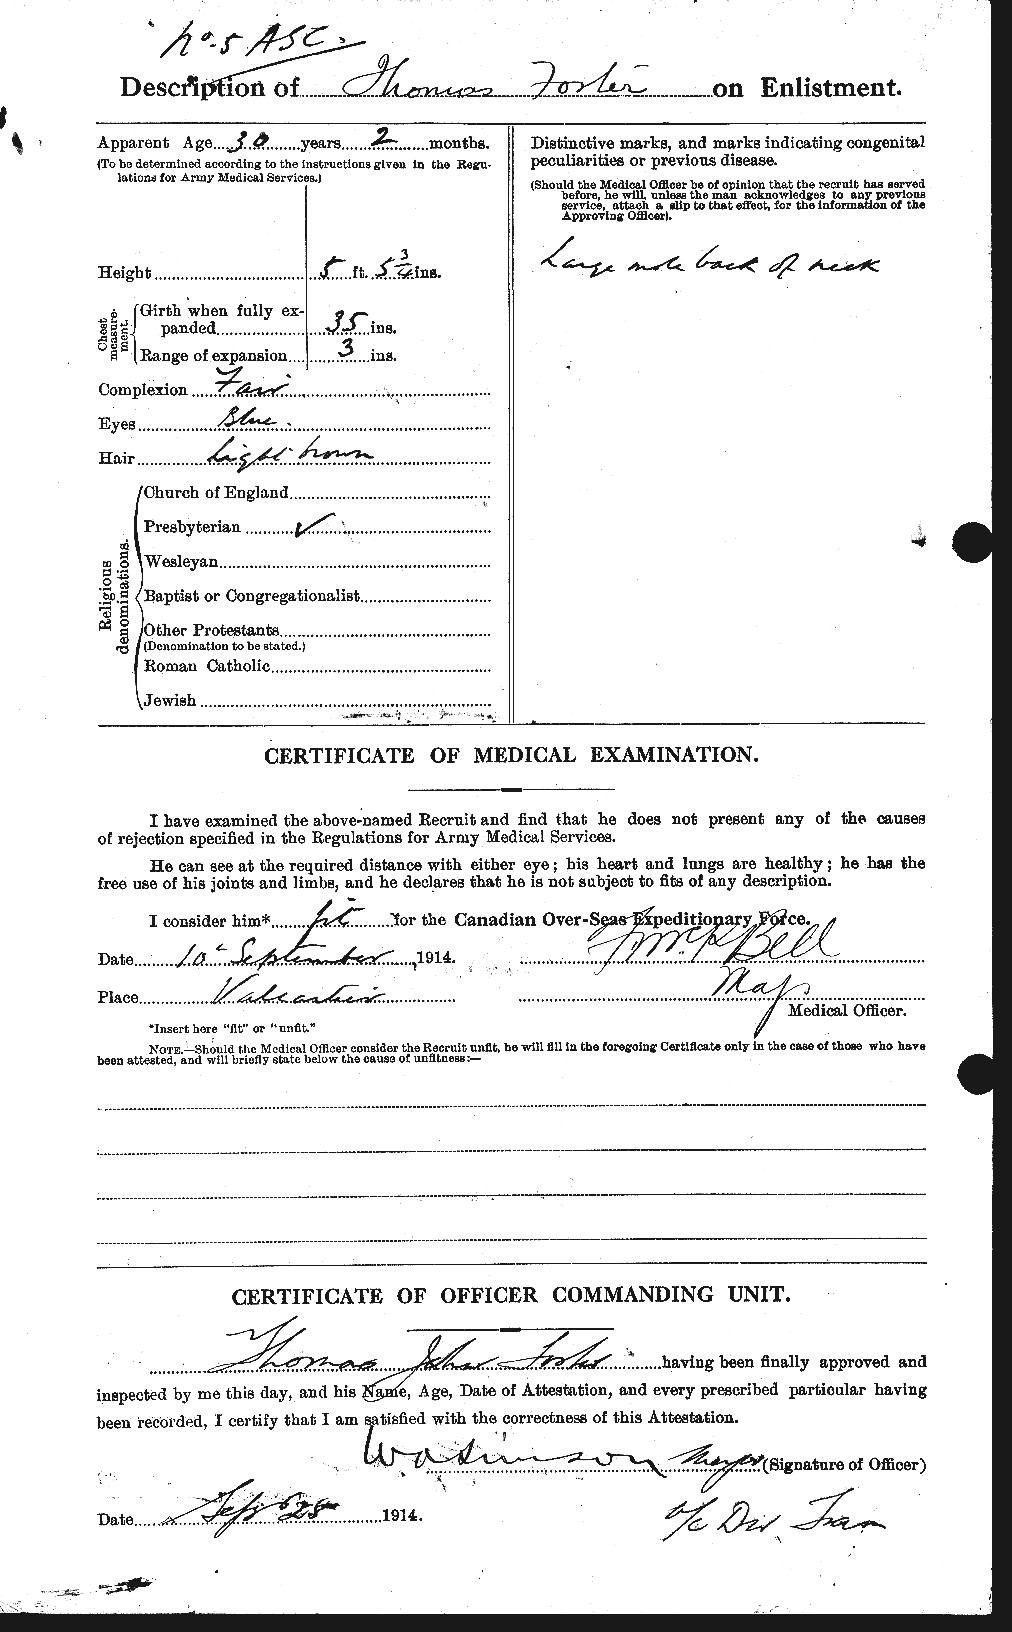 Dossiers du Personnel de la Première Guerre mondiale - CEC 335242b